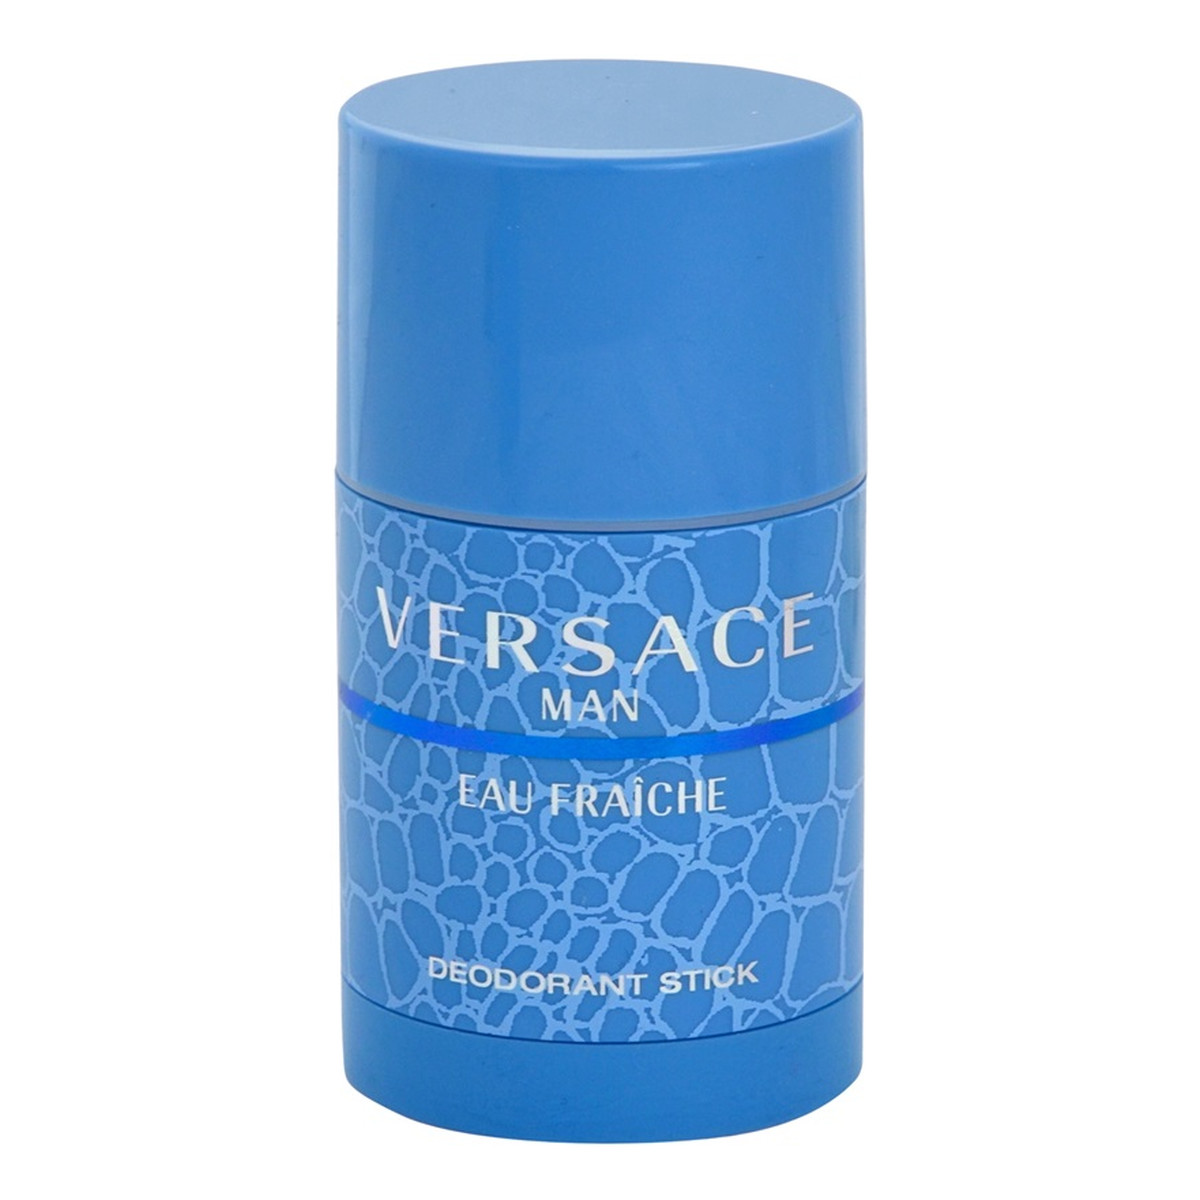 Versace Eau Fraiche Man dezodorant w sztyfcie dla mężczyzn 75ml